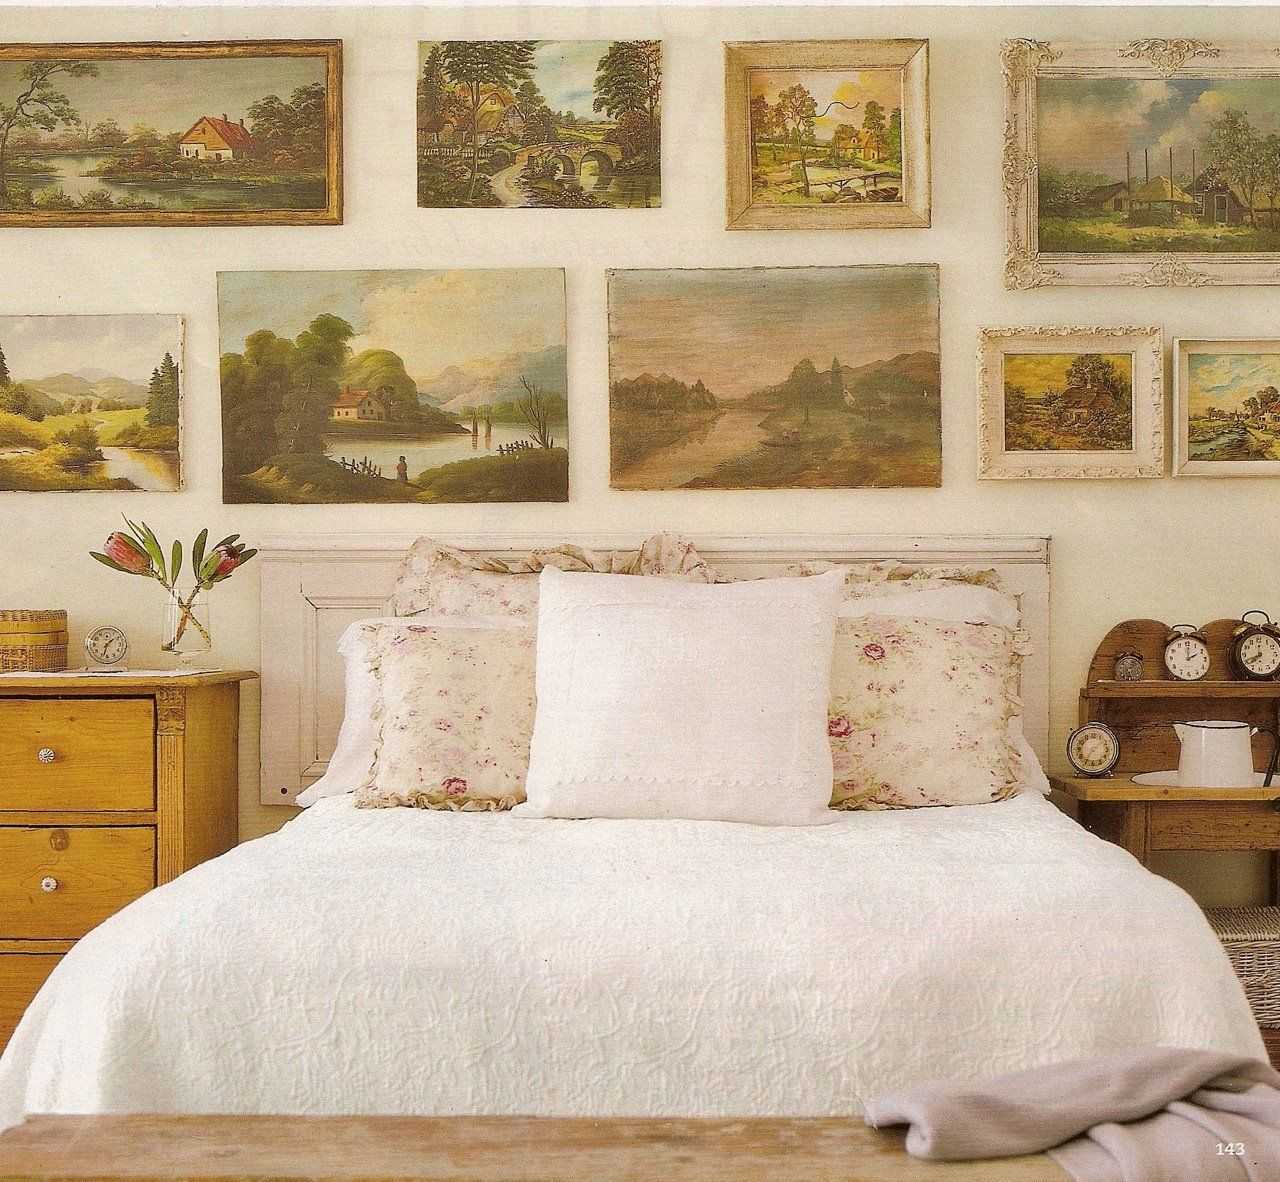 Картины для спальни (69 фото): модульные картины с пионами, какие можно вешать над кроватью, в интерьере семейной пары